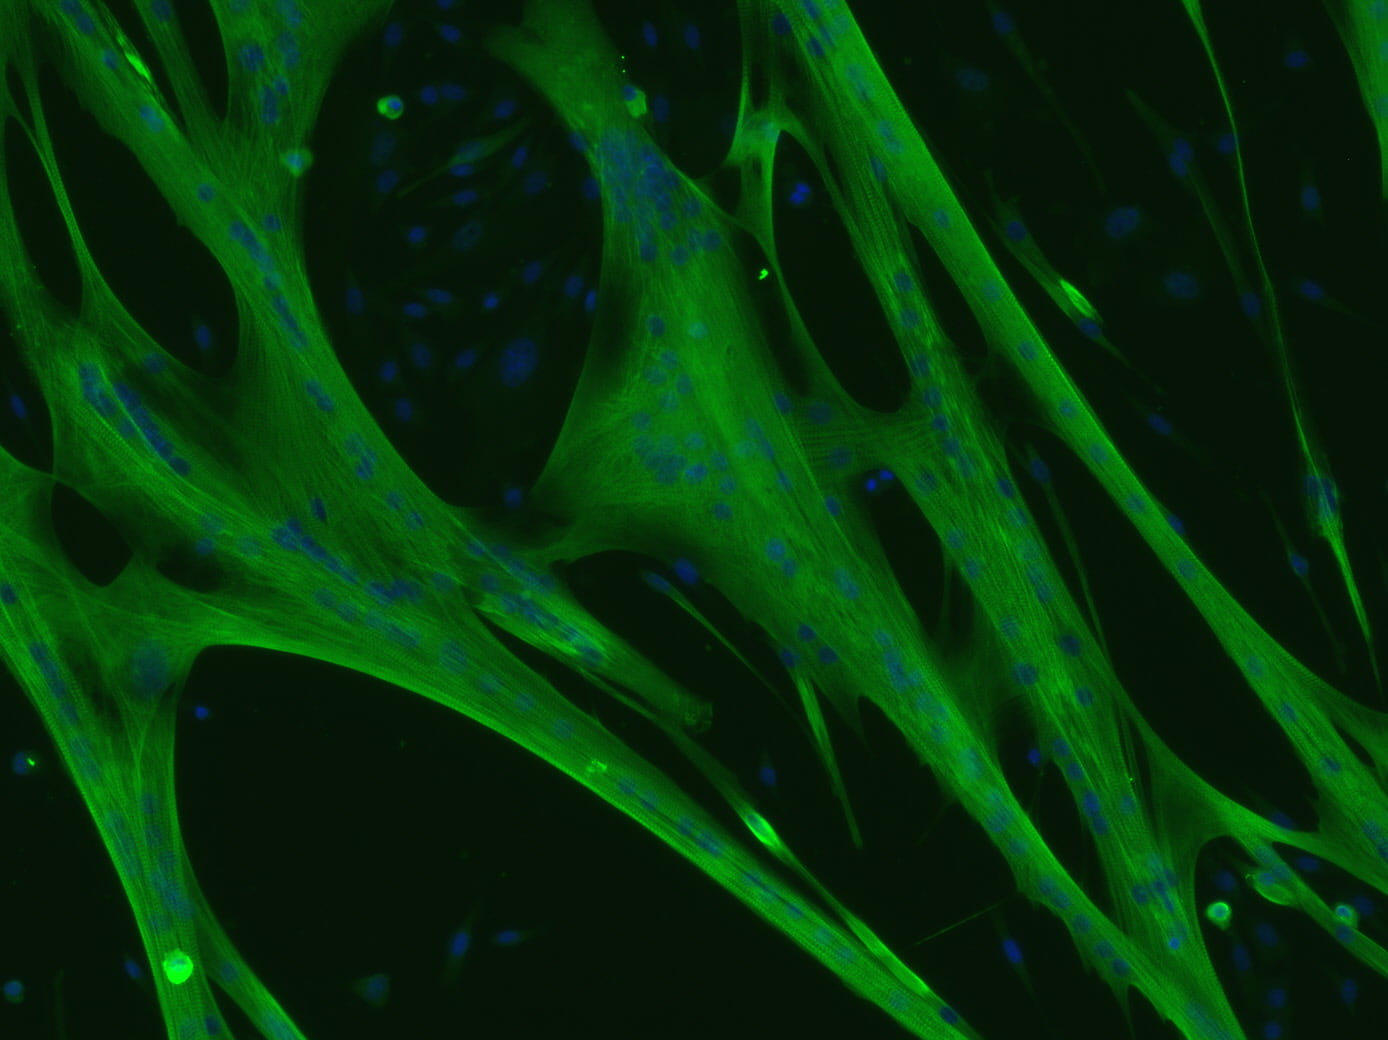 Skeletal muscle cells